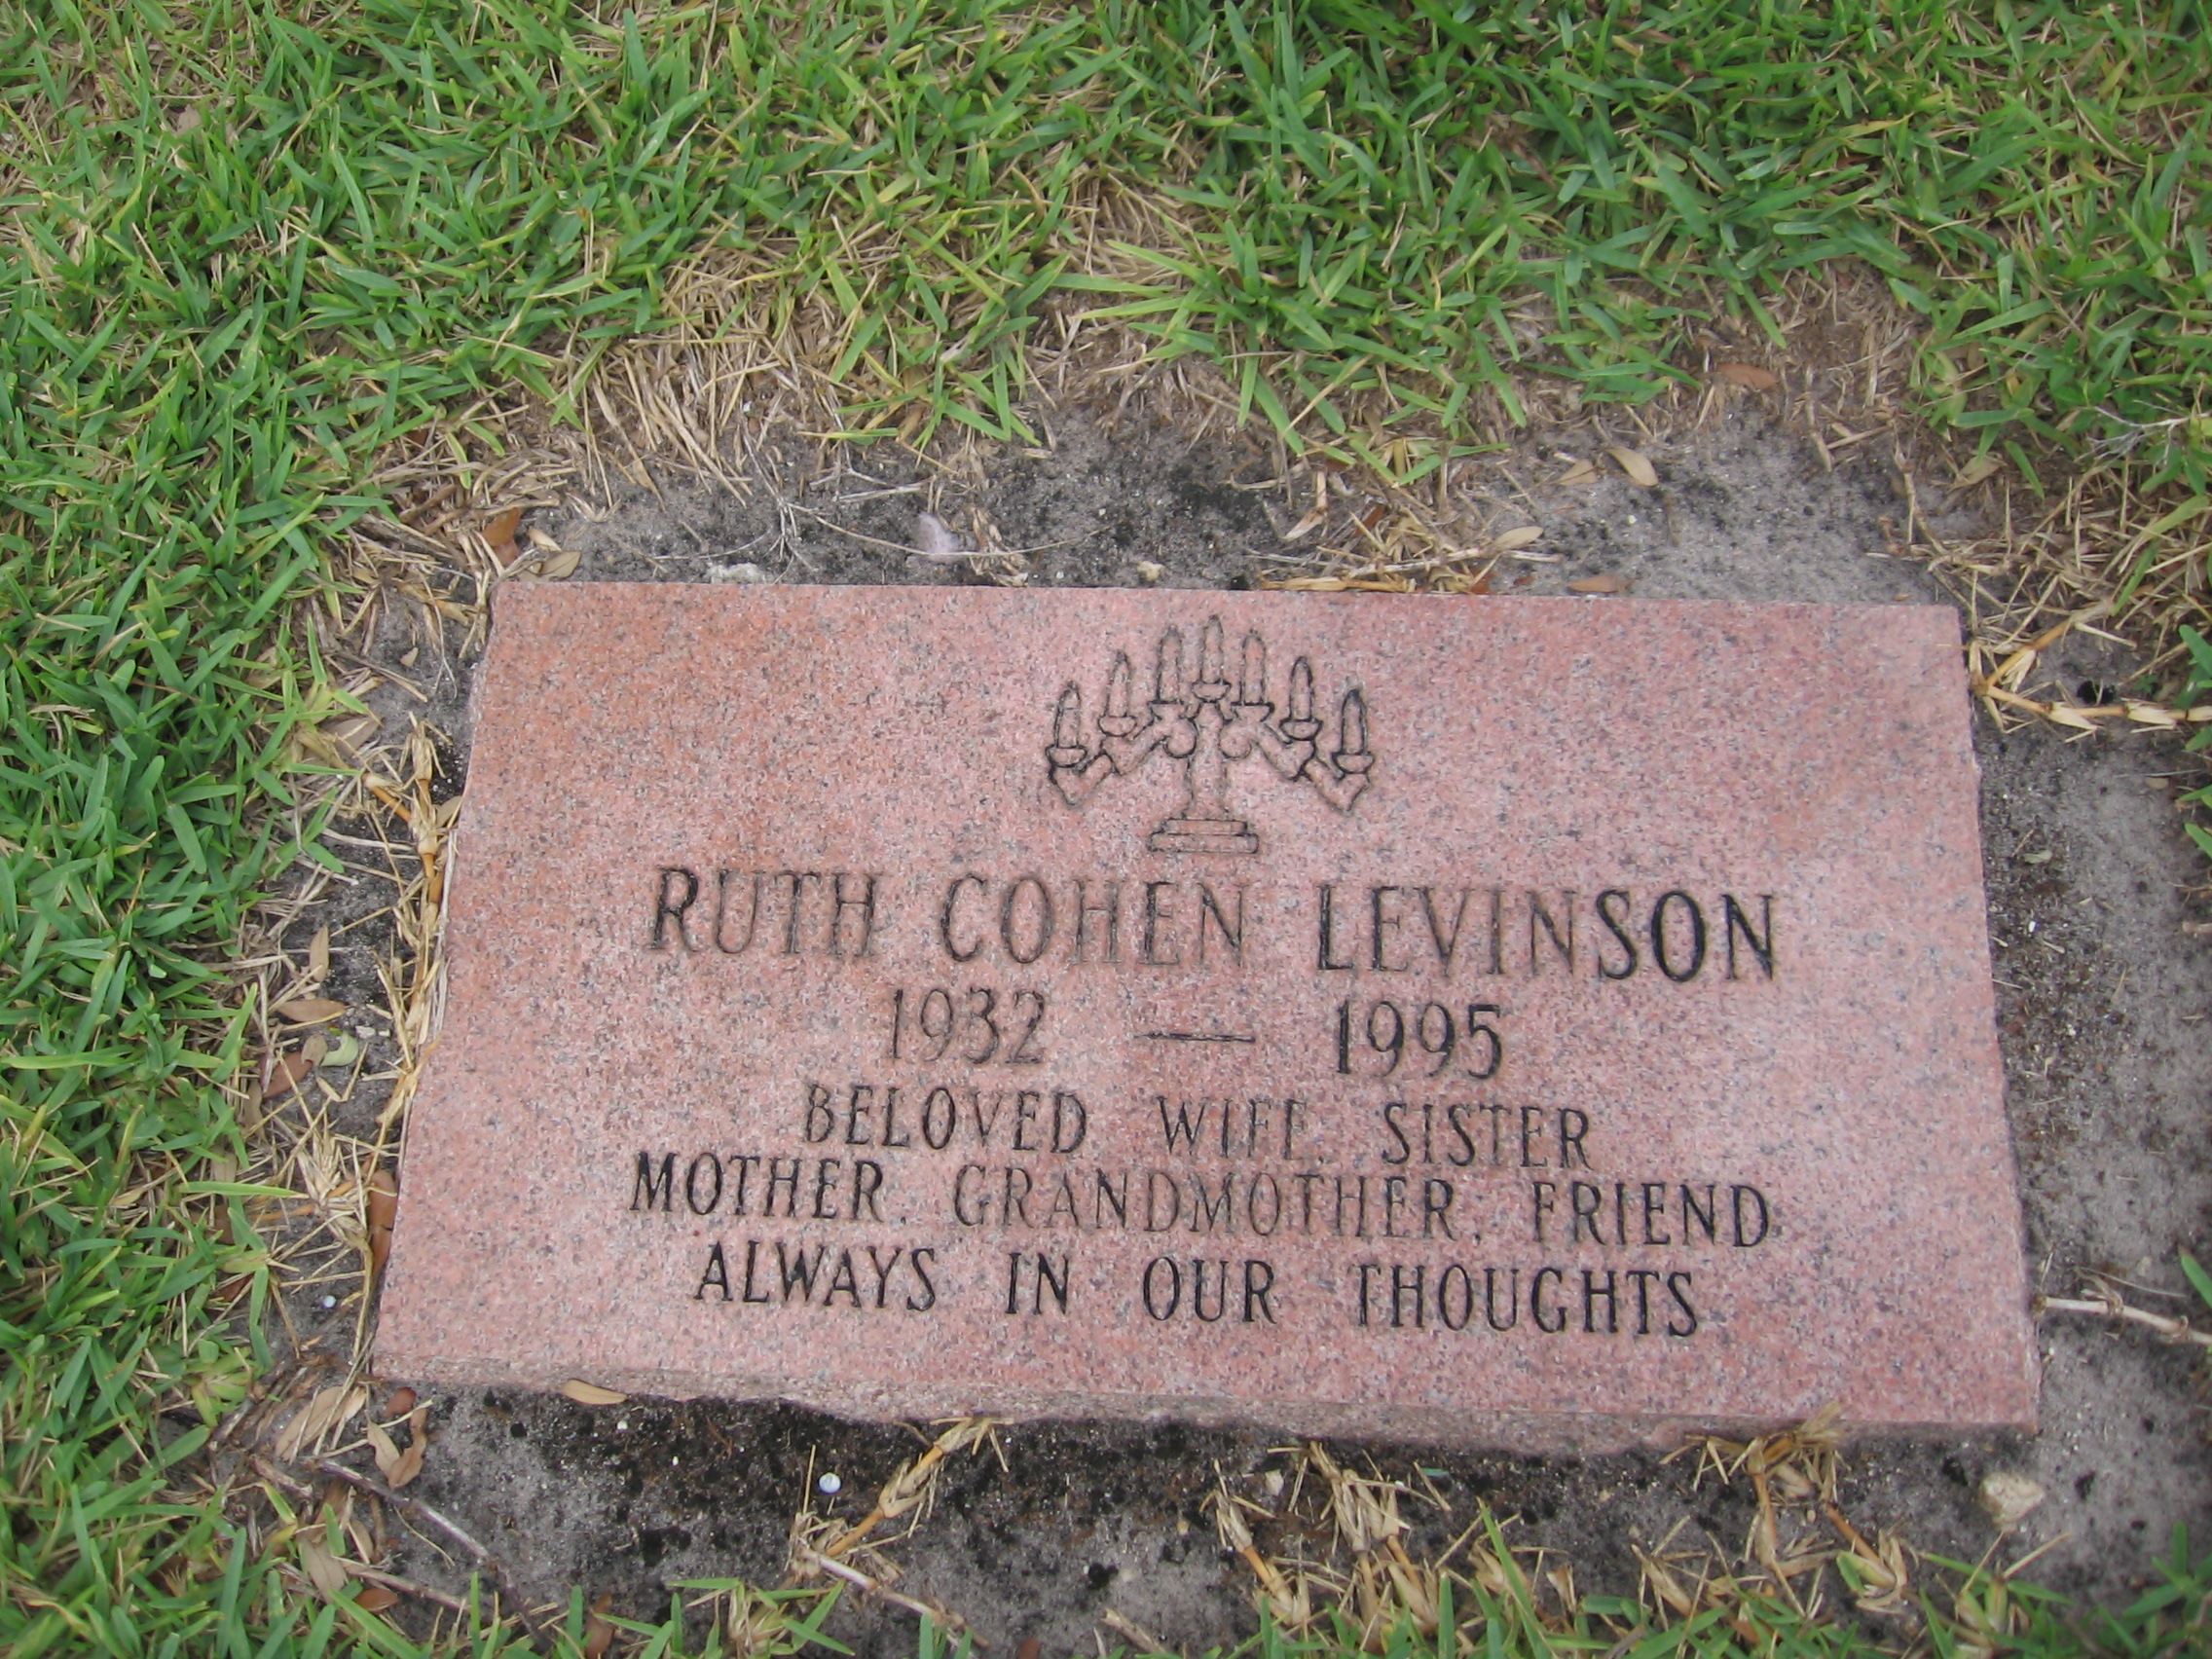 Ruth Cohen Levinson